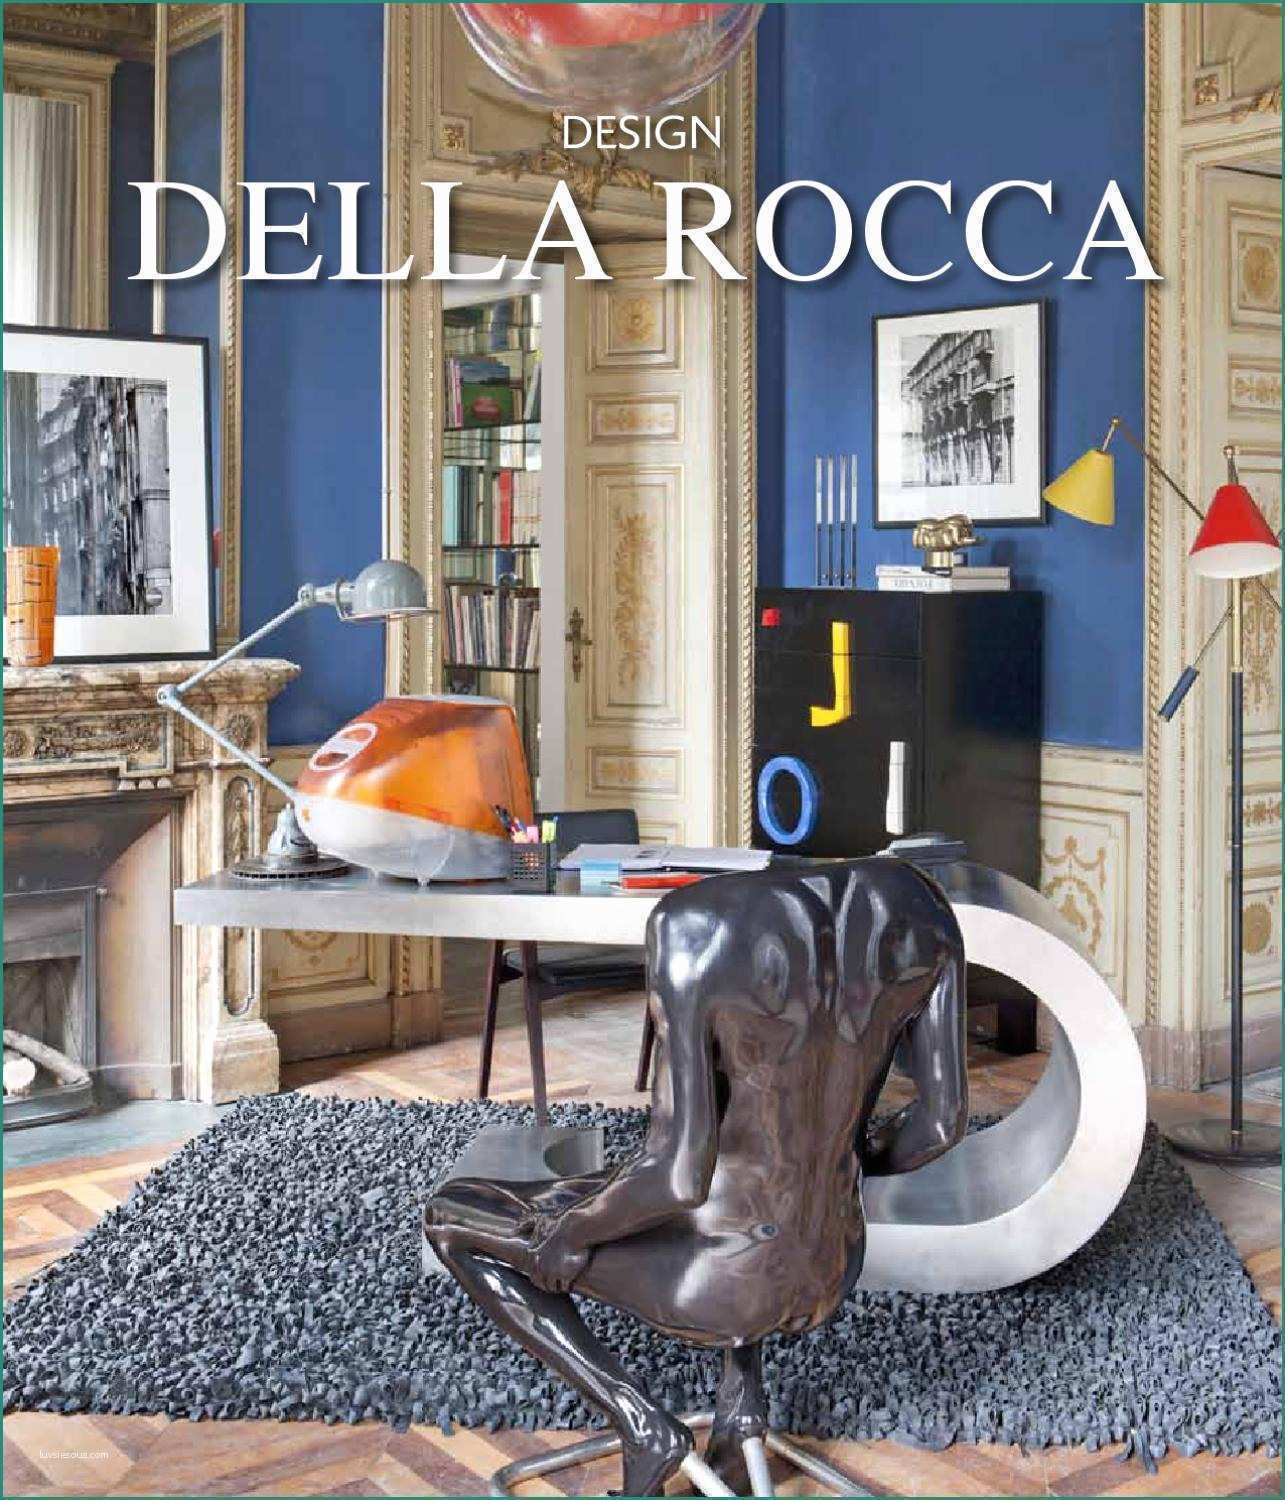 Sedia Zig Zag E Design Della Rocca by andrea sosso issuu